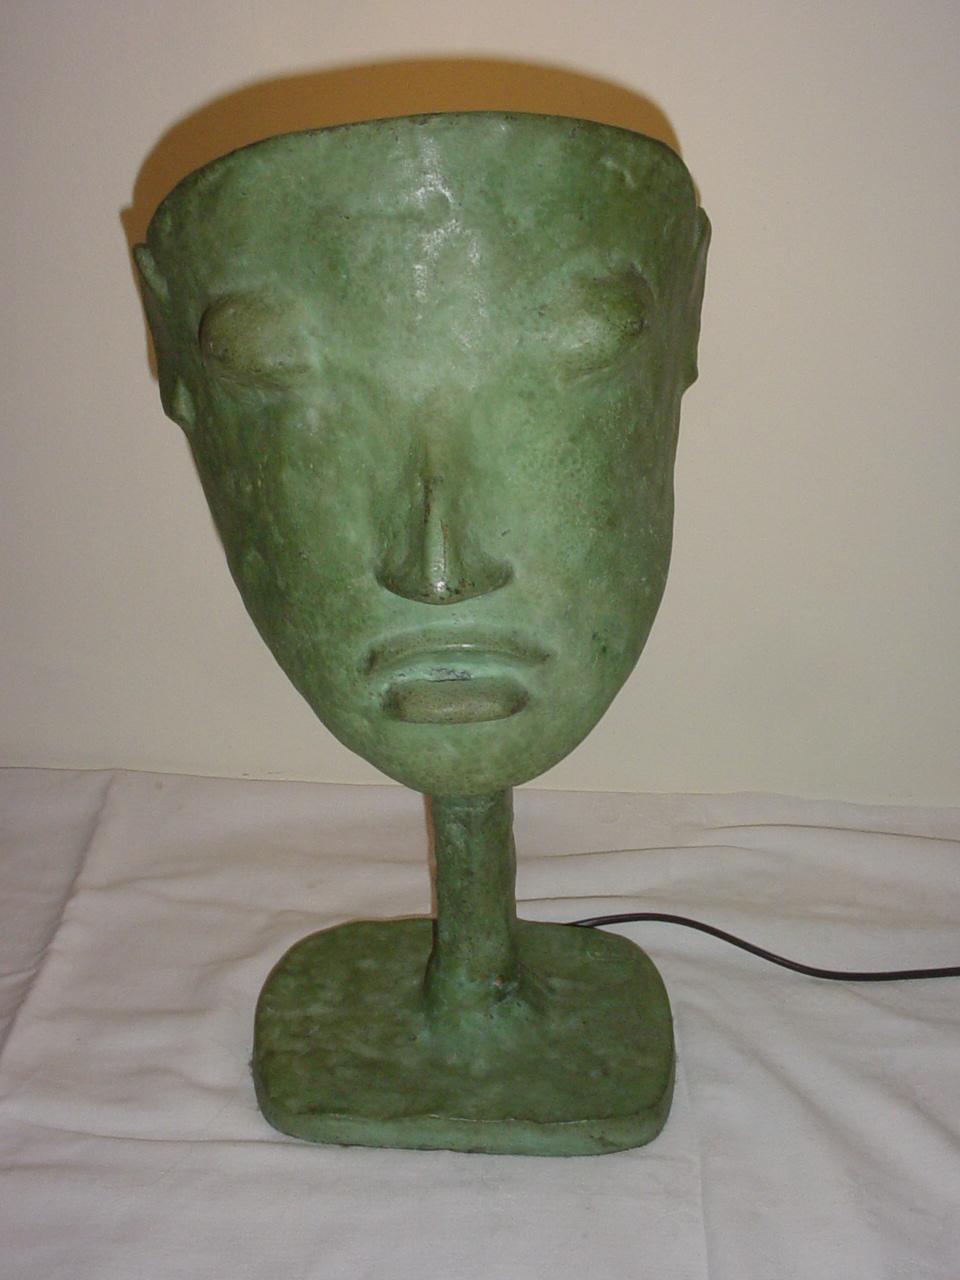 Elisabeth Garouste (née en 1949) et Mattia Bonetti (né en 1953)
Lampe sculpture Masque, modèle crée en 1984
Edition limitée En Attendant les Barbares épuisée
Bronze patiné vert antique. Estampé « Blanchet fondeur », du monogramme BG, et numéroté